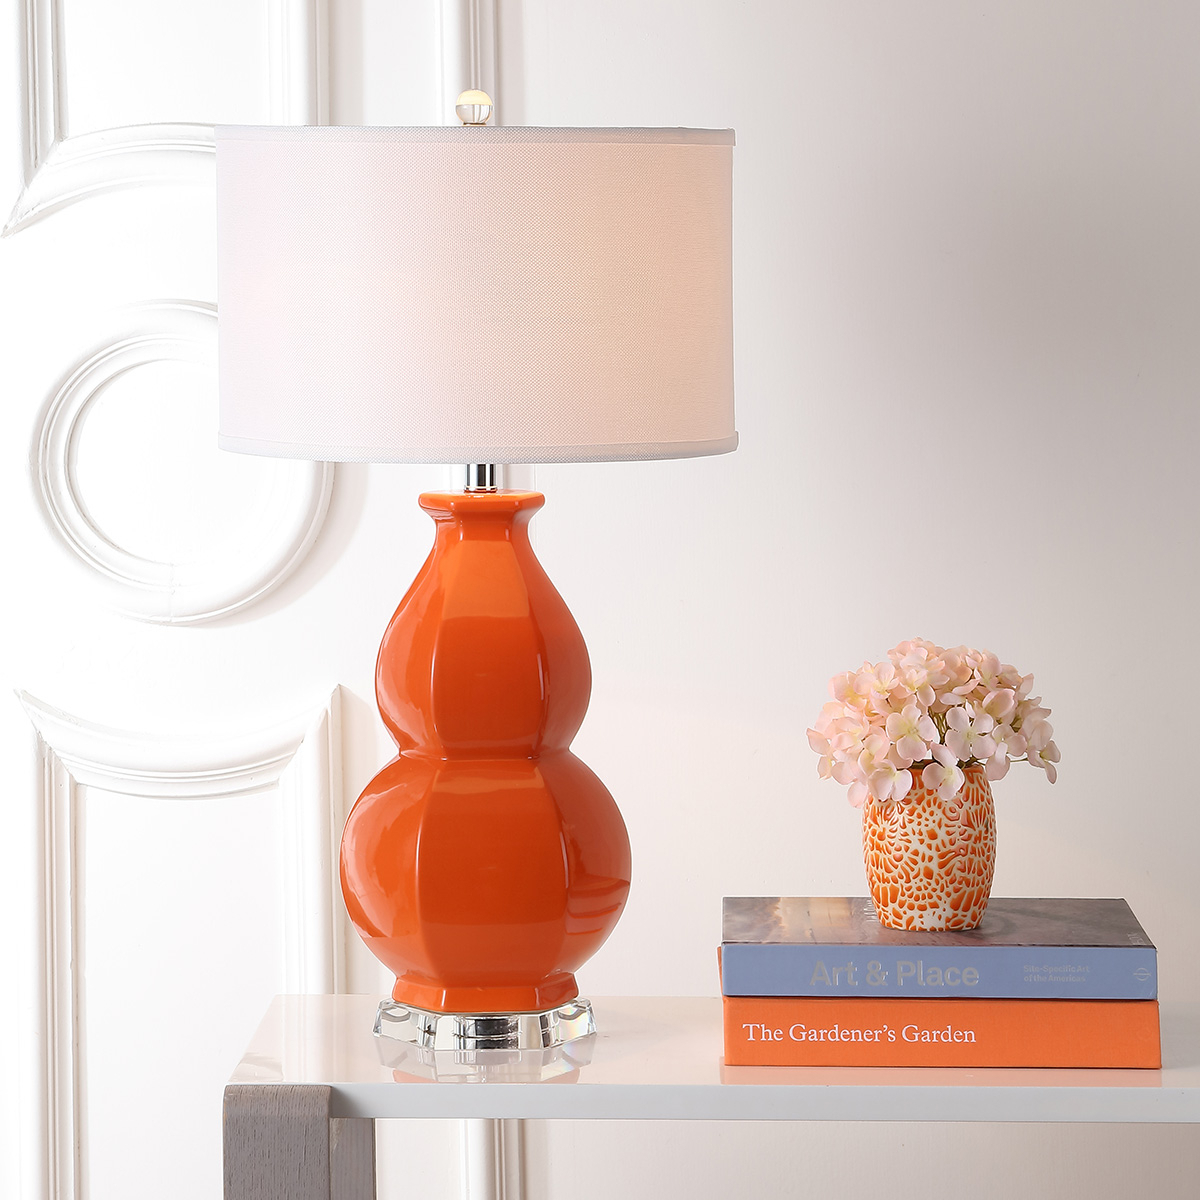 SAFAVIEH Juniper Table Lamp , Orange ,